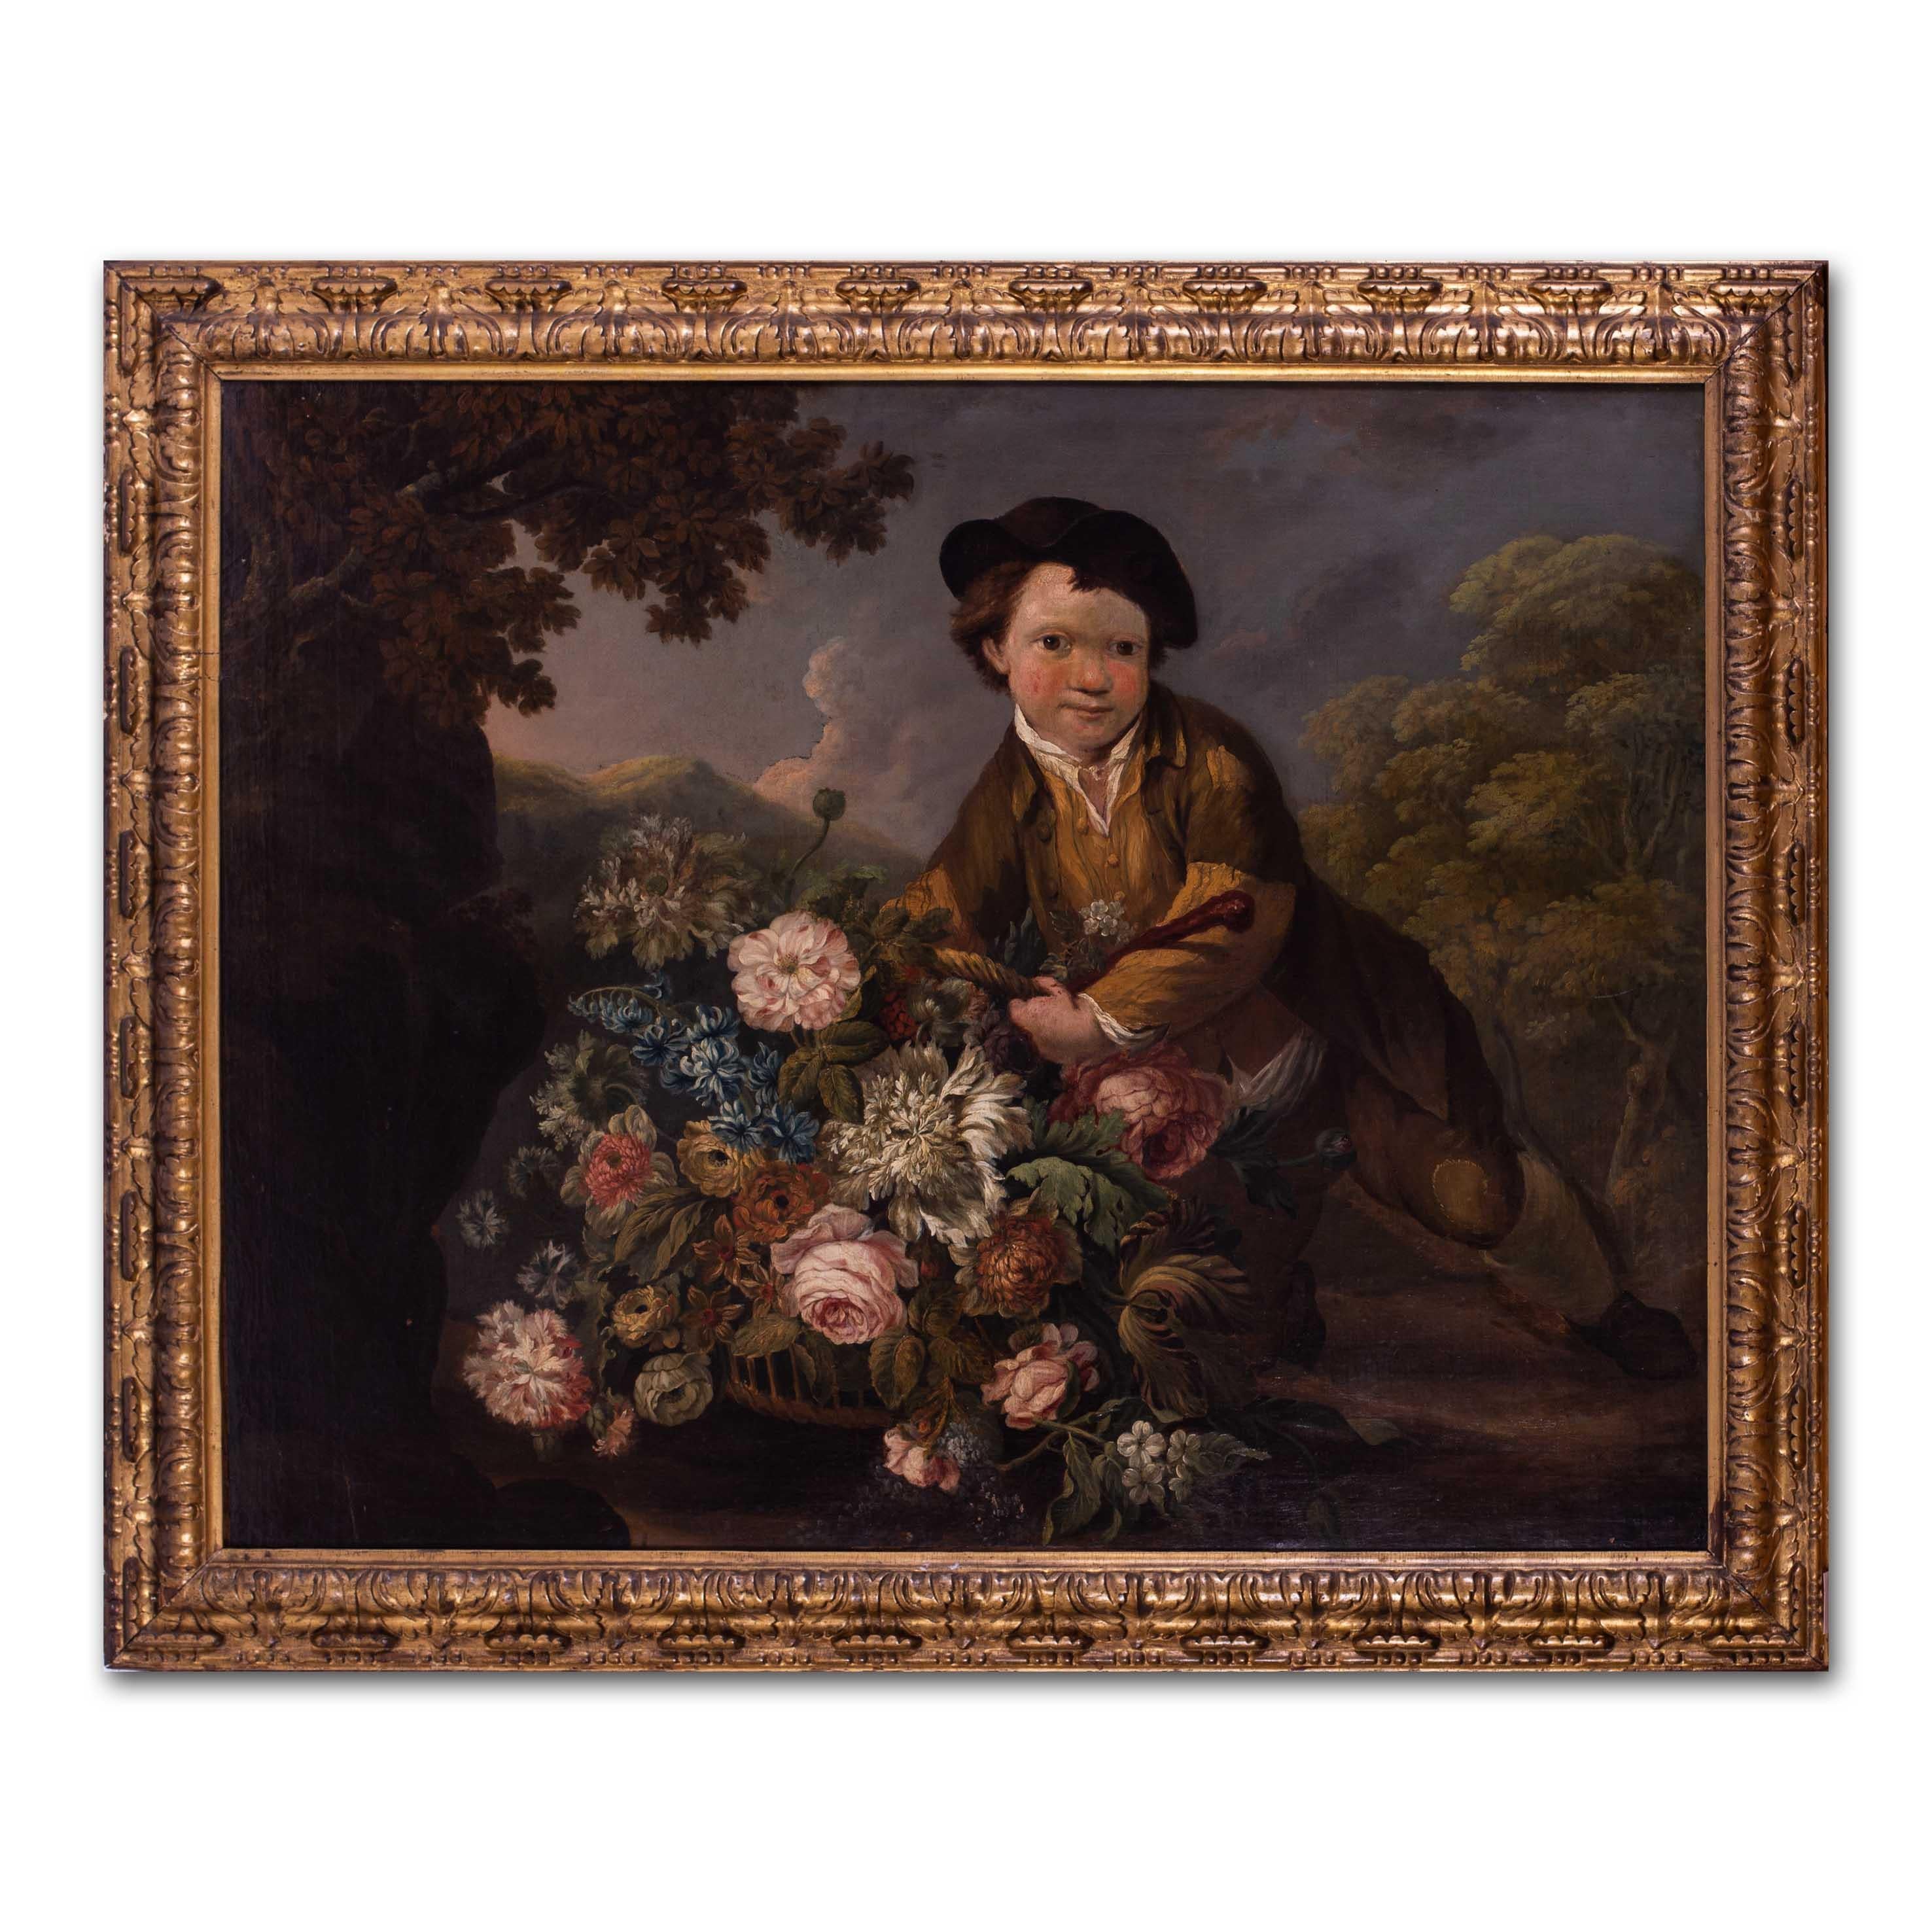 Dutch School, 18th Century, Boy with a basketful of flowers 1